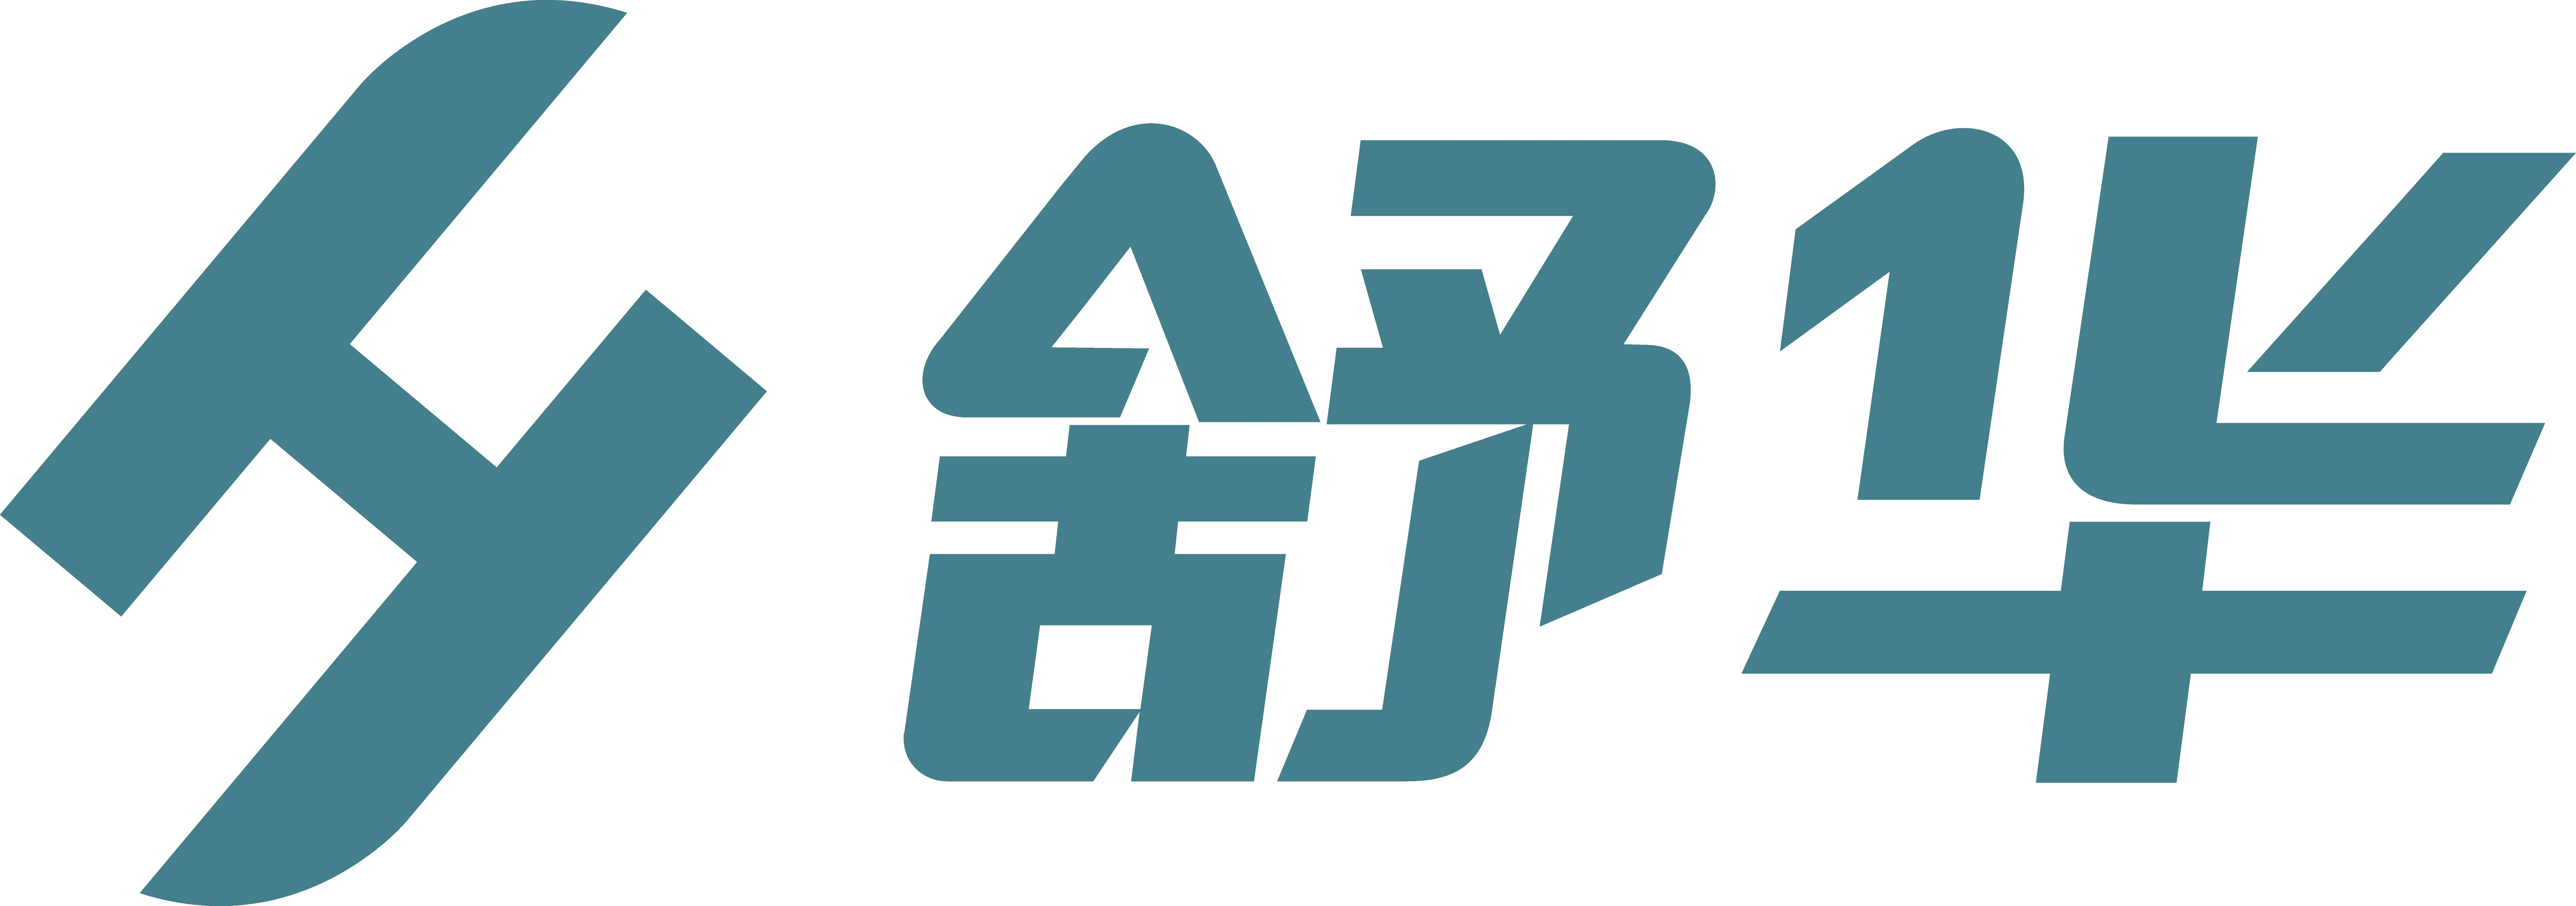 舒华体育logo图片